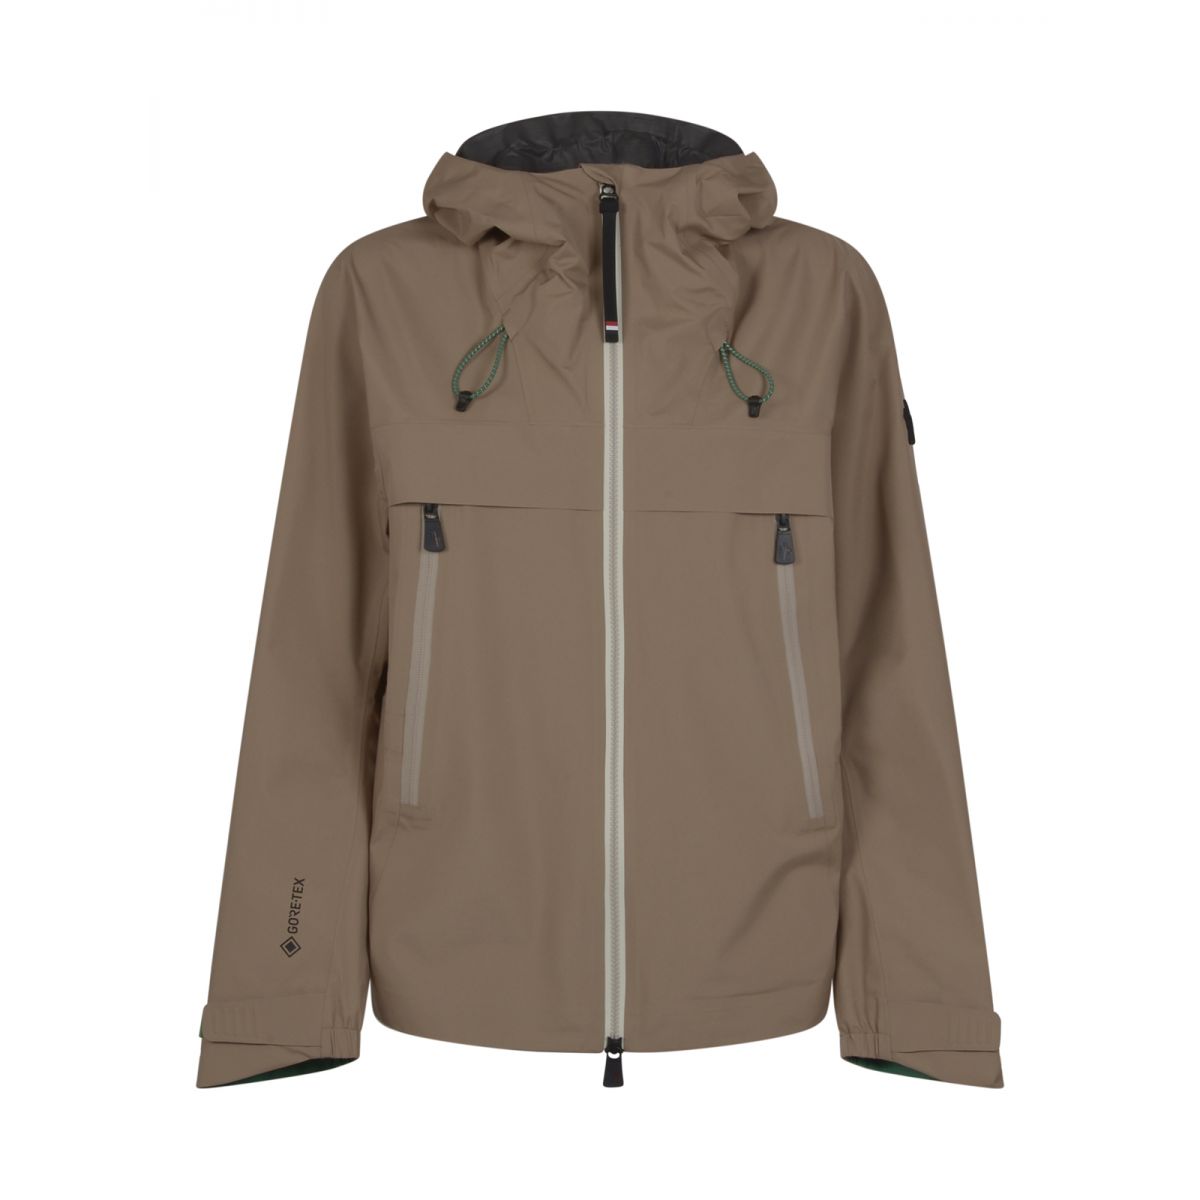 MONCLER GRENOBLE - Maules hooded jacket